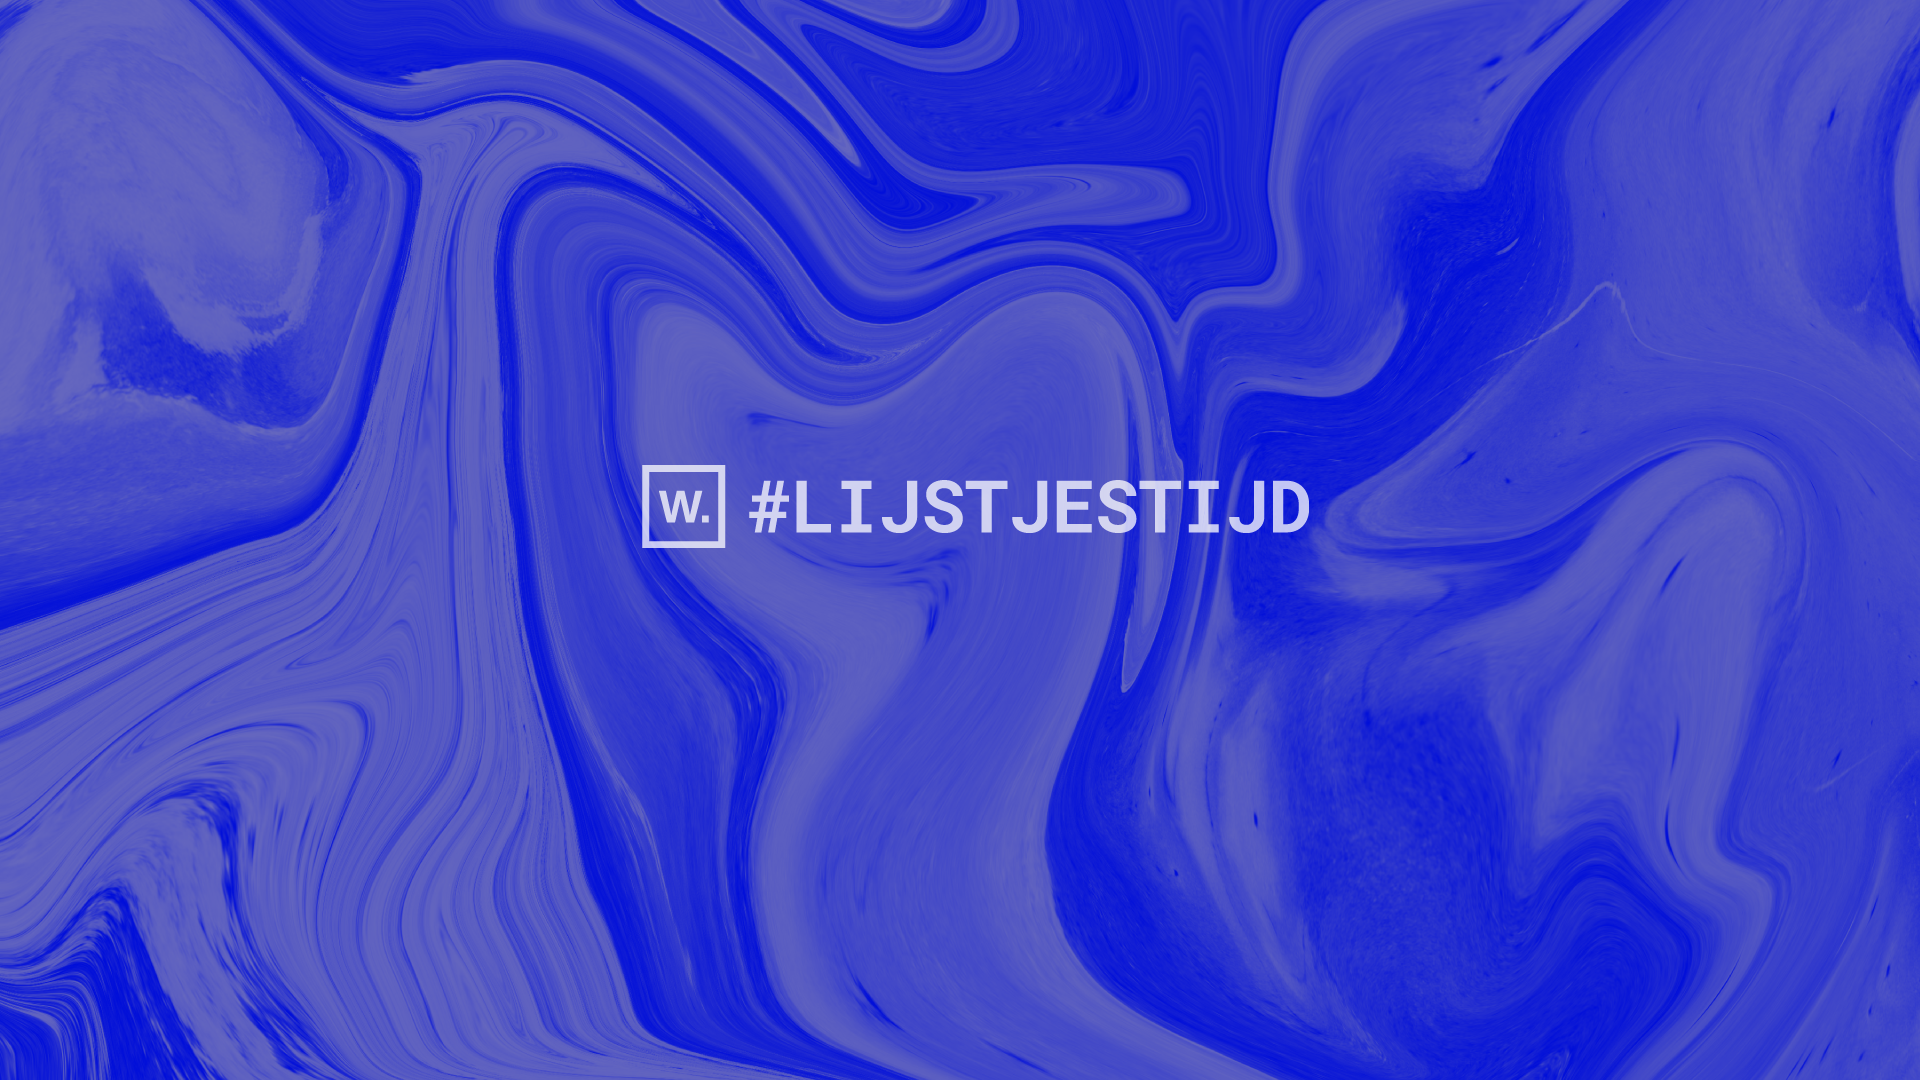 Abstracte, blauwgekleurde foto met de tekst #LIJSTJESTIJD